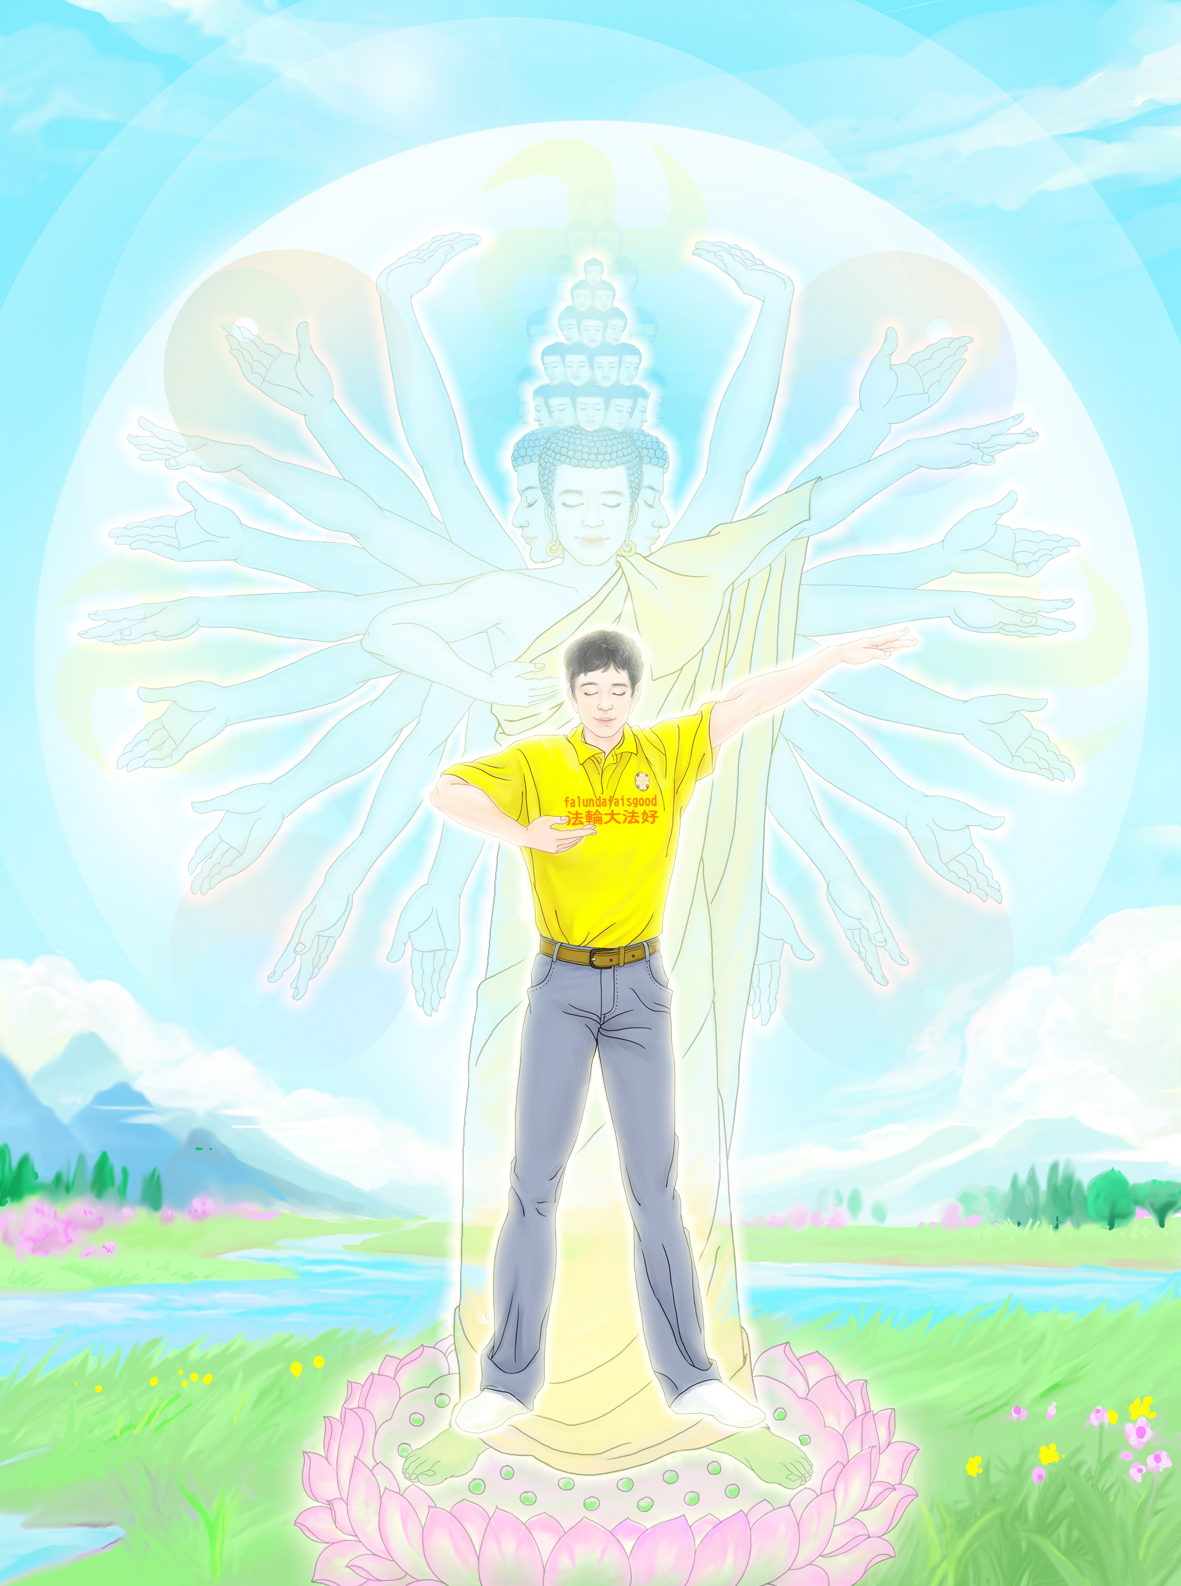 Image for article [Celebrando o Dia Mundial de Falun Dafa] Pintura em compulador: Cena milagrosa quando um praticante pratica Falun Gong